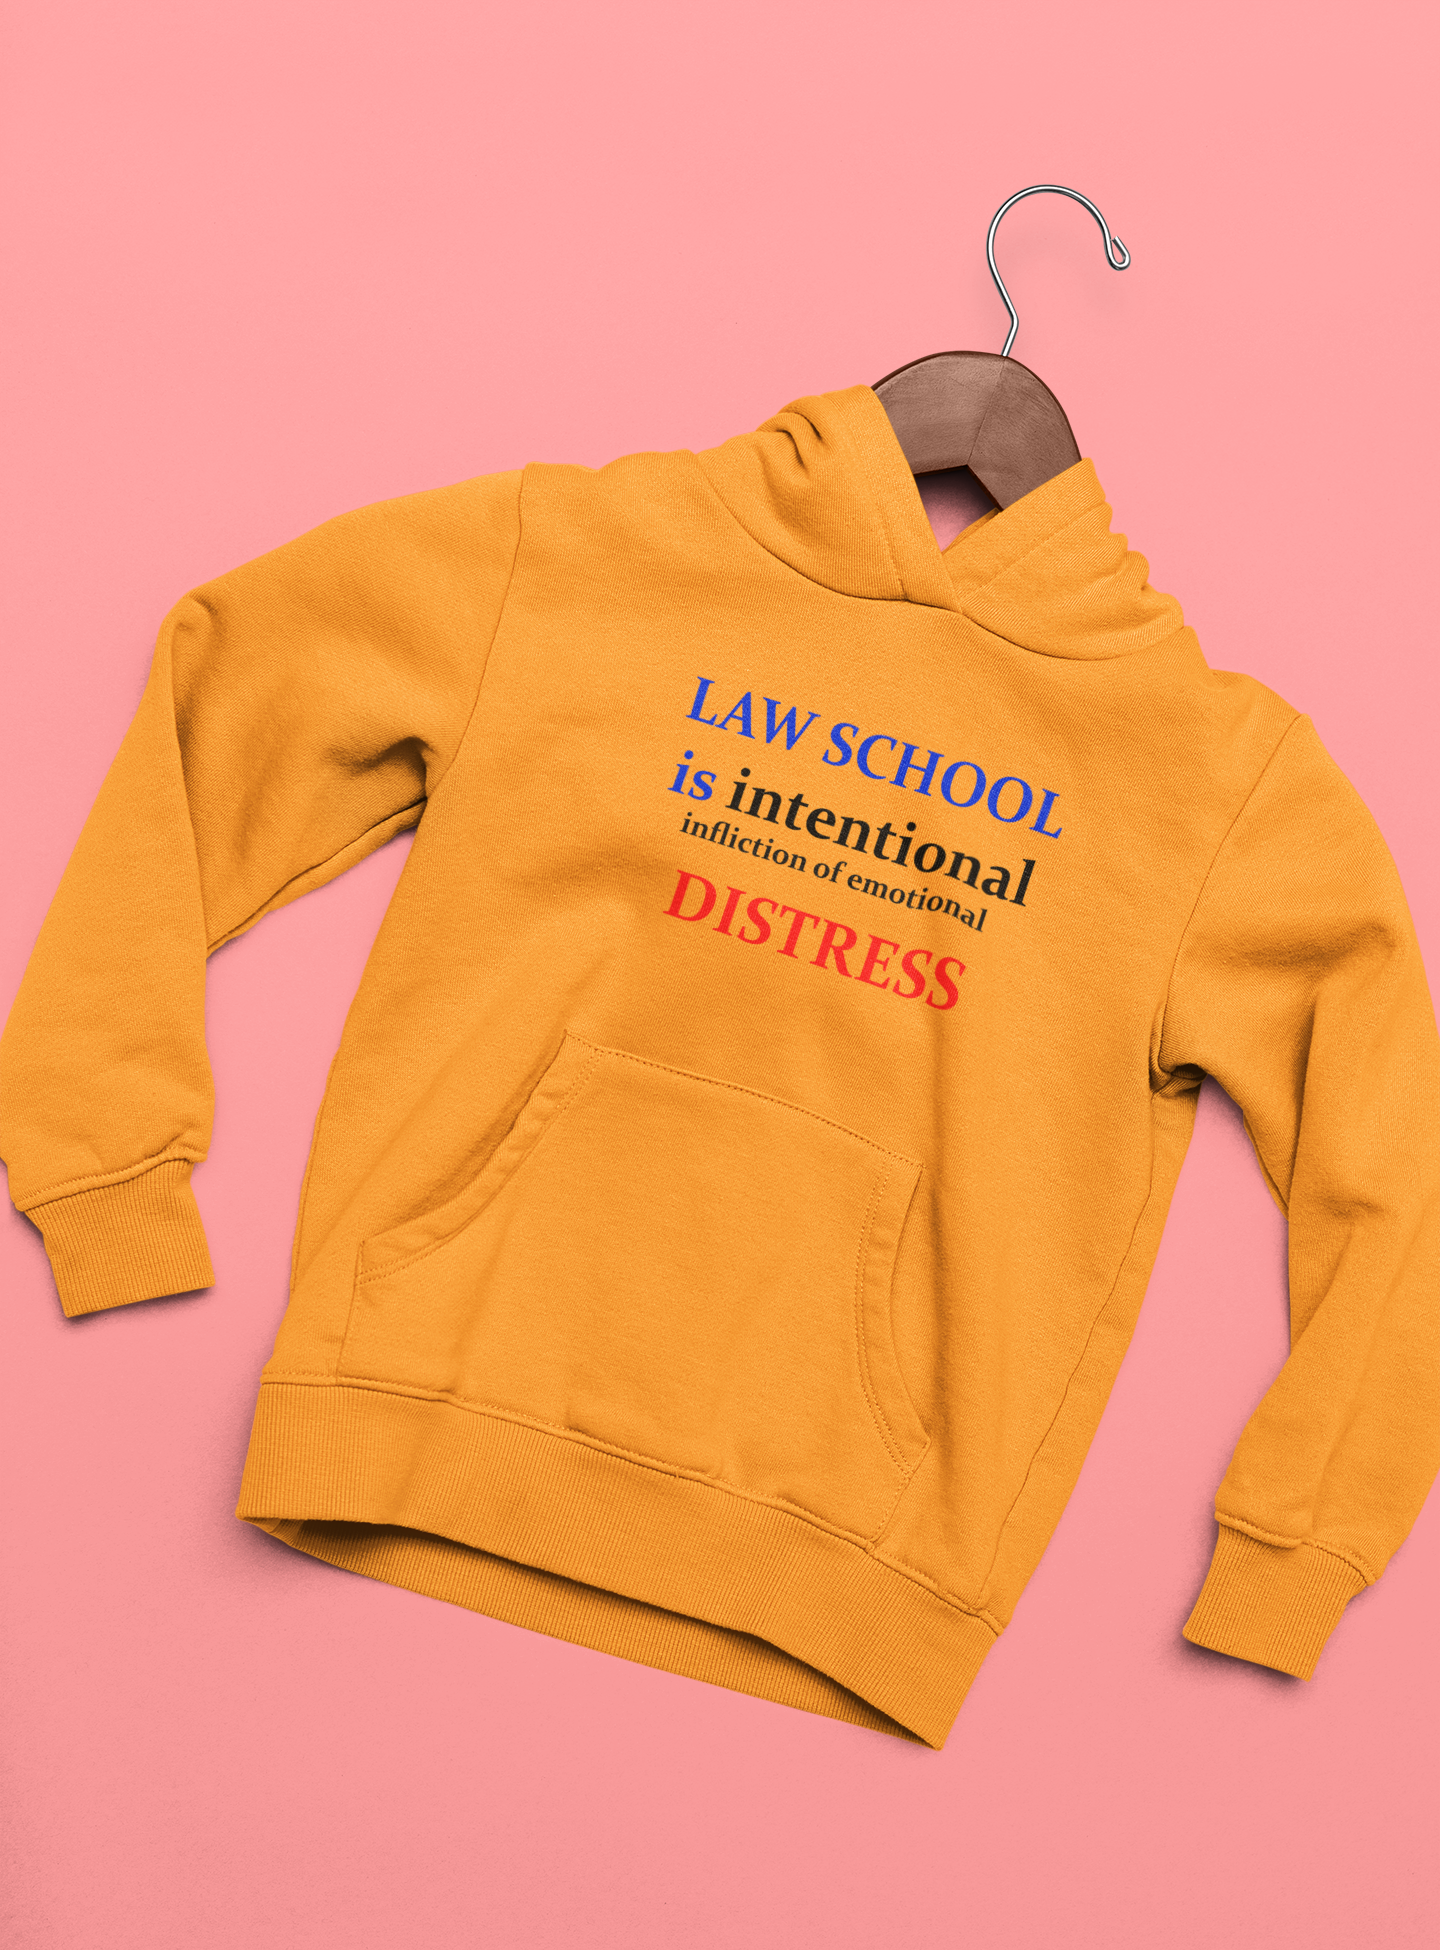 Law School is Intentional Distress Lawyer Hoodies for Women-FunkyTeesClub